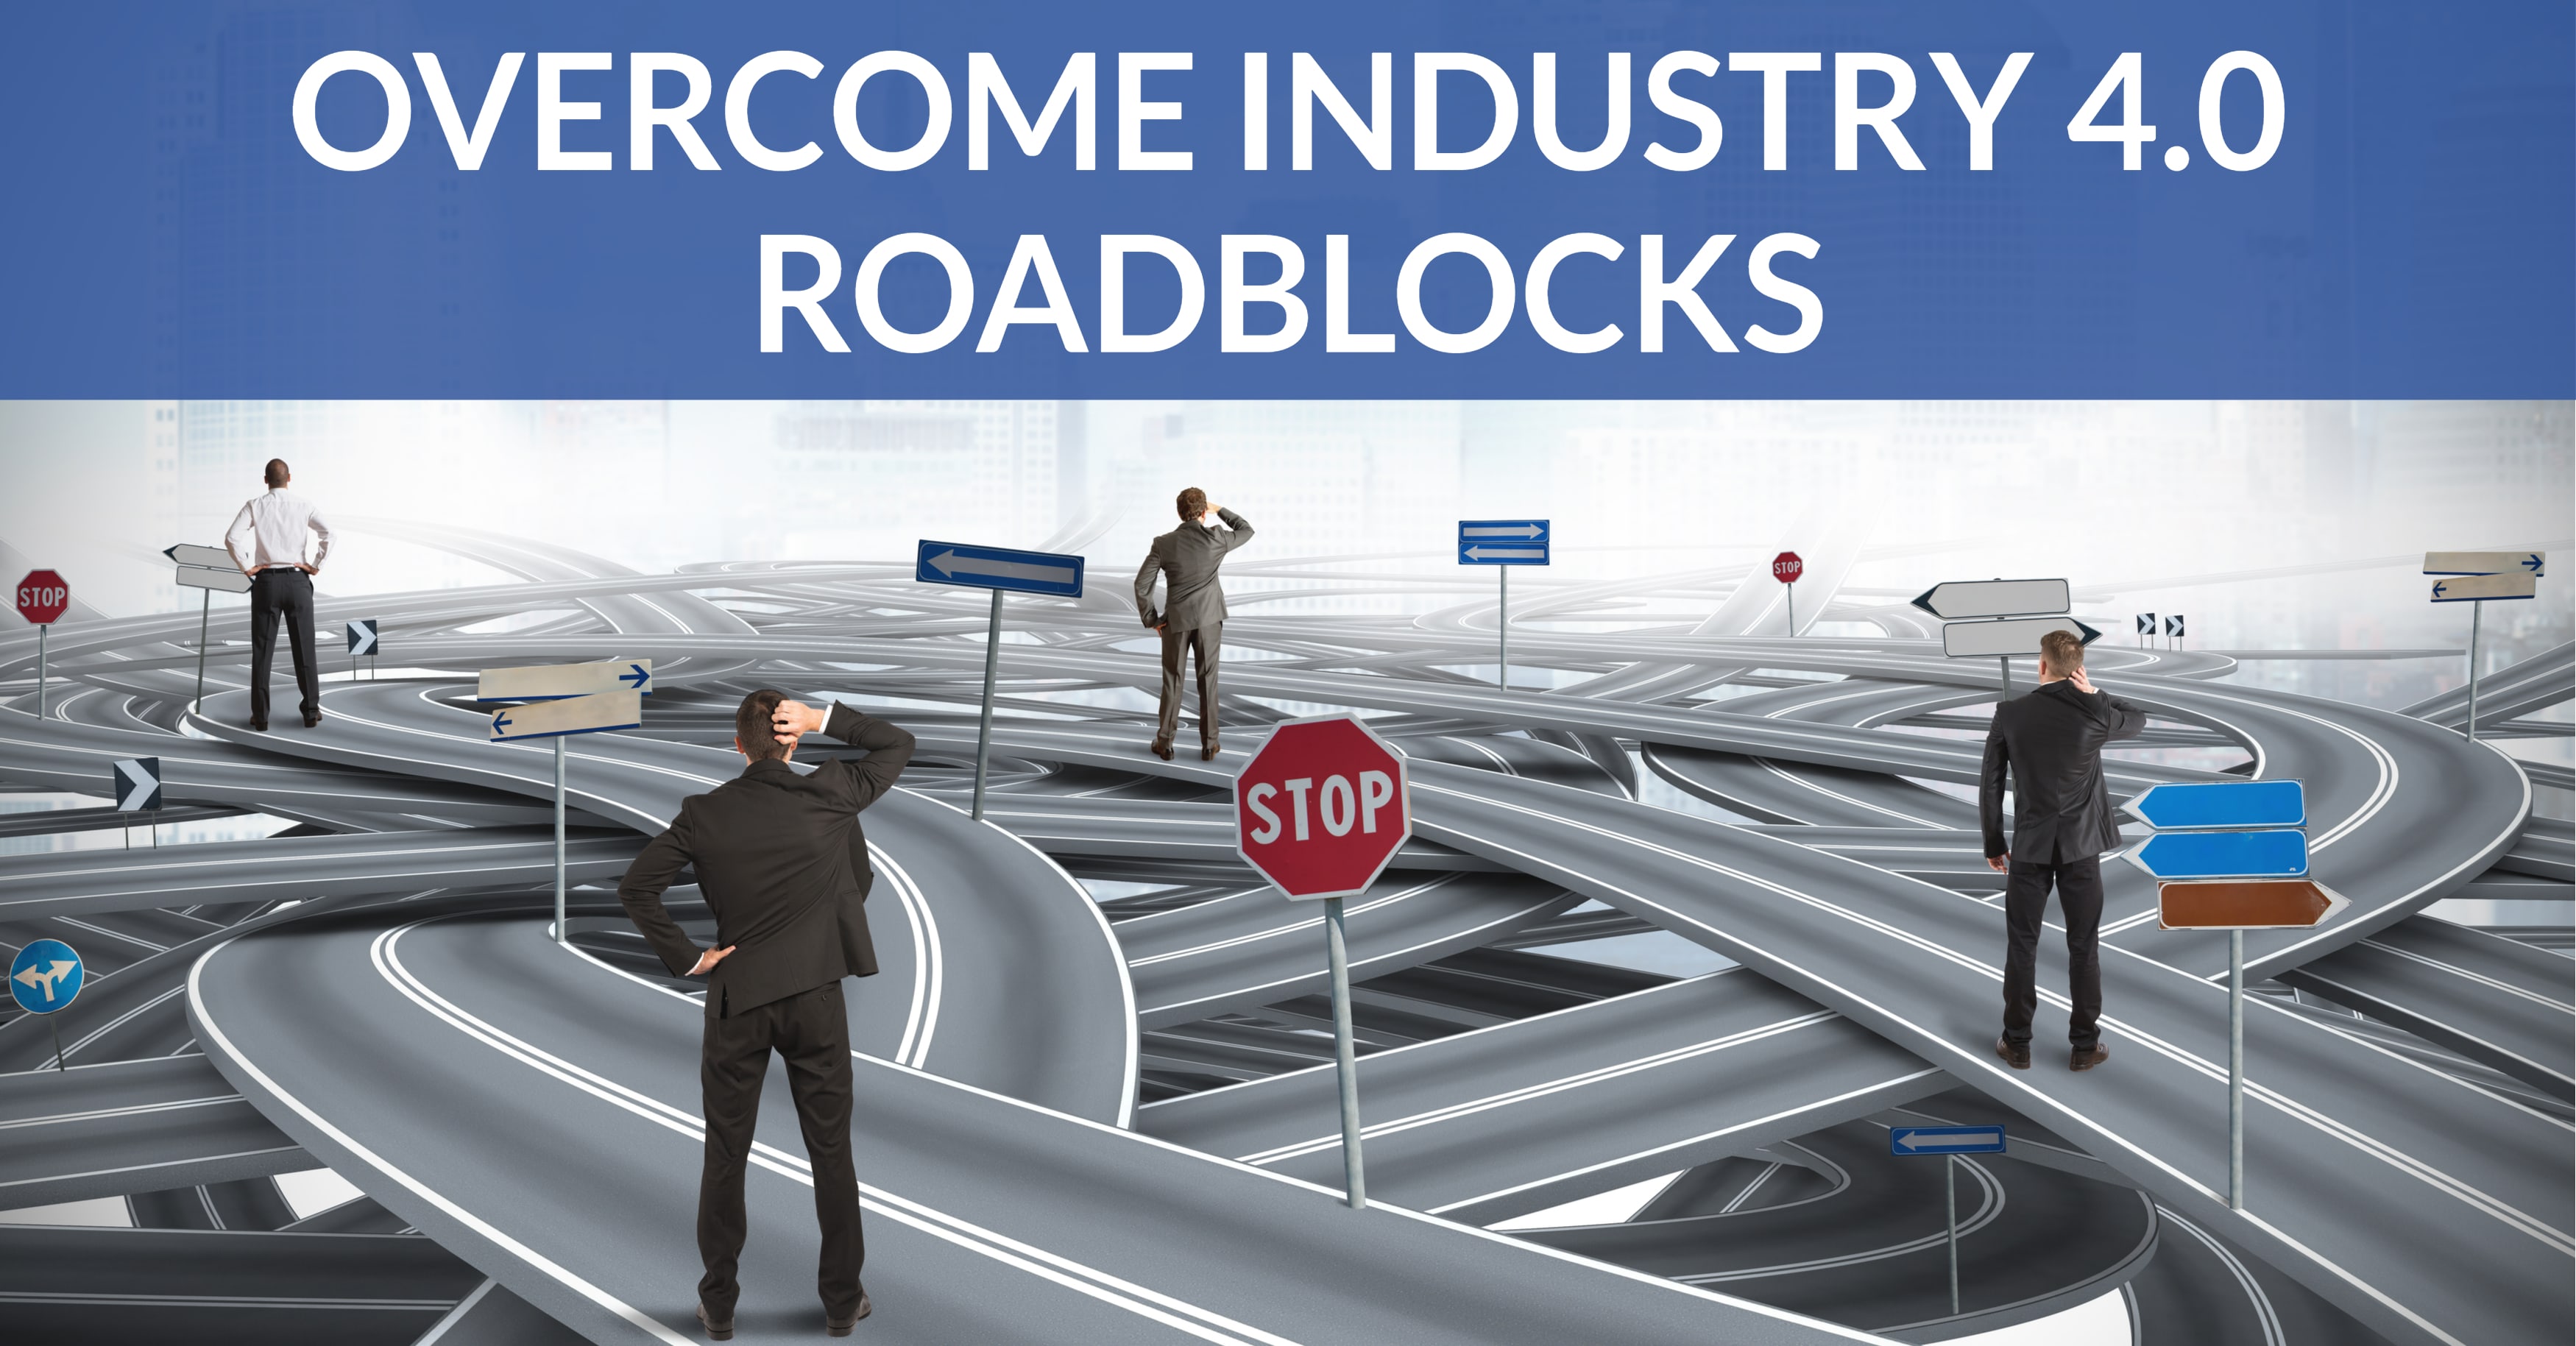 industry-4.0-roadblocks-min.jpg